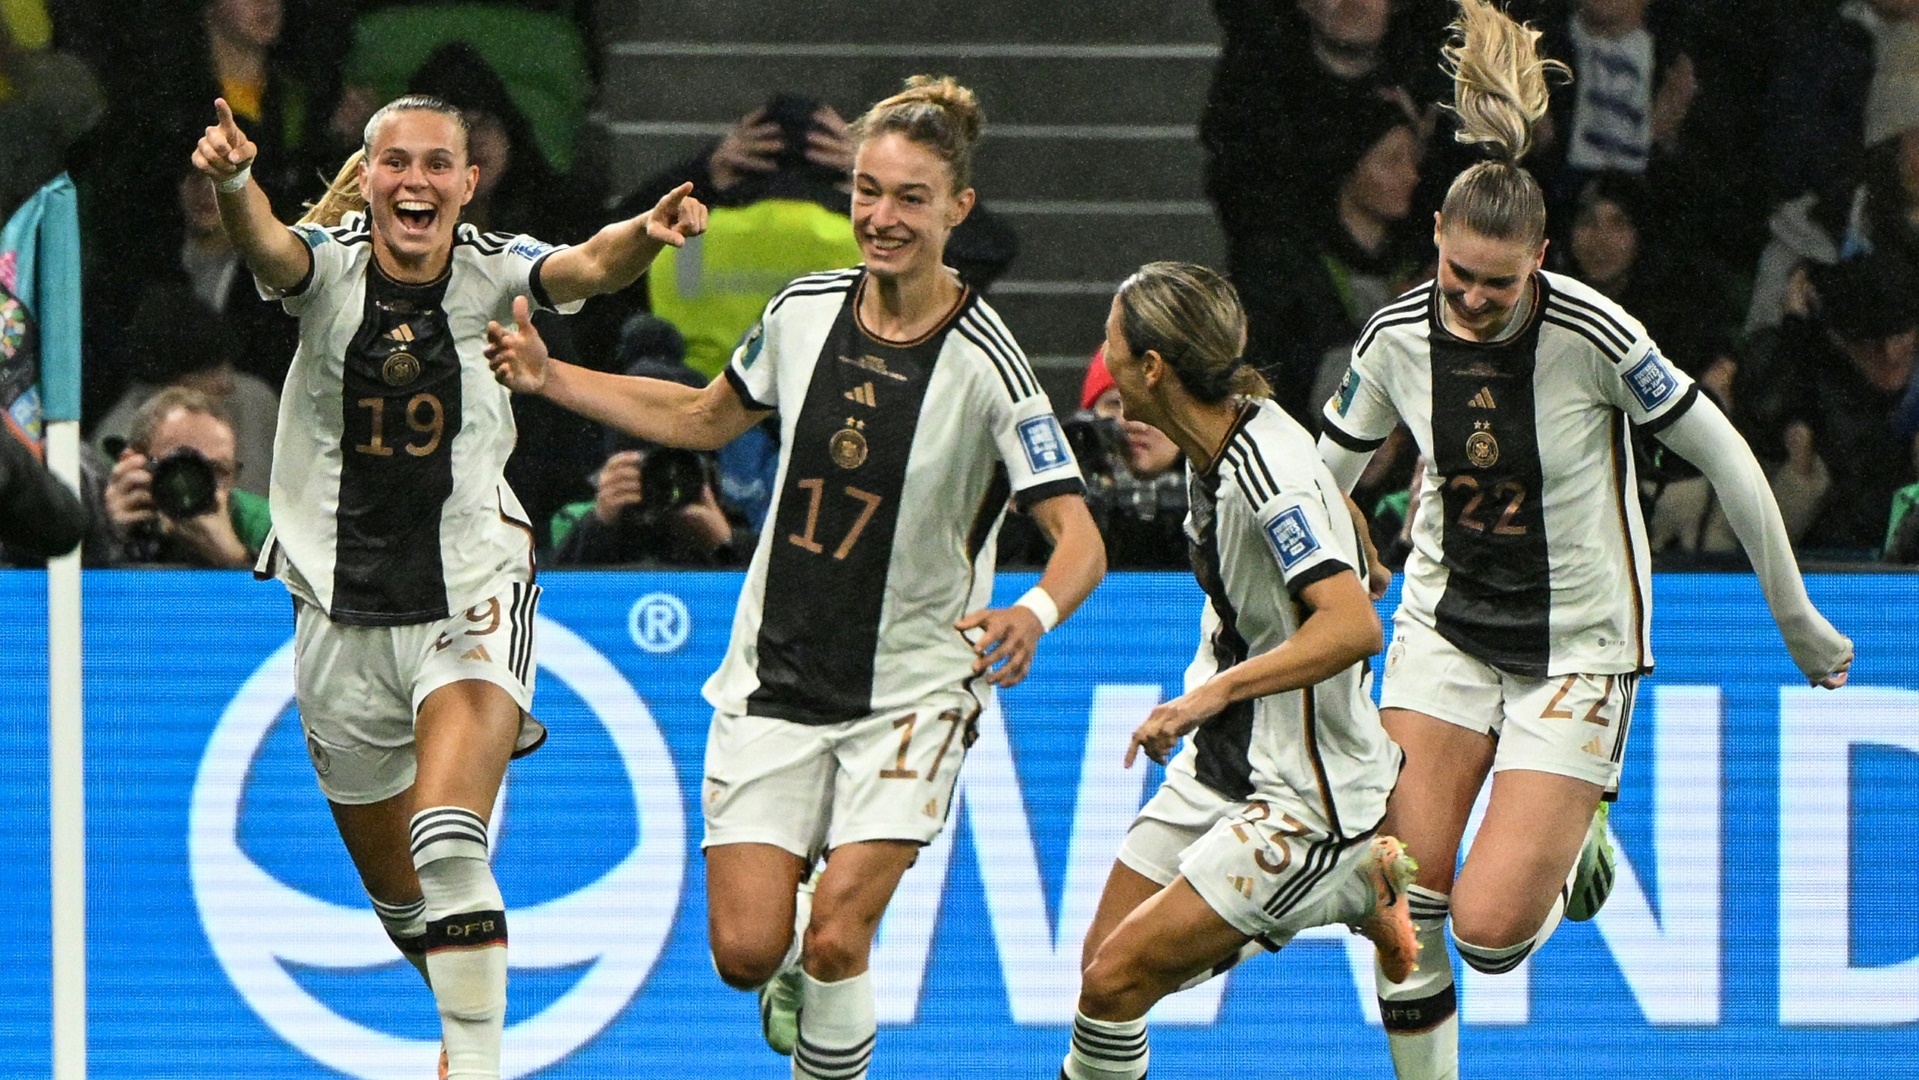 Trotz Zeitverschiebung Fans wollen DFB-Frauen live sehen Sports Illustrated